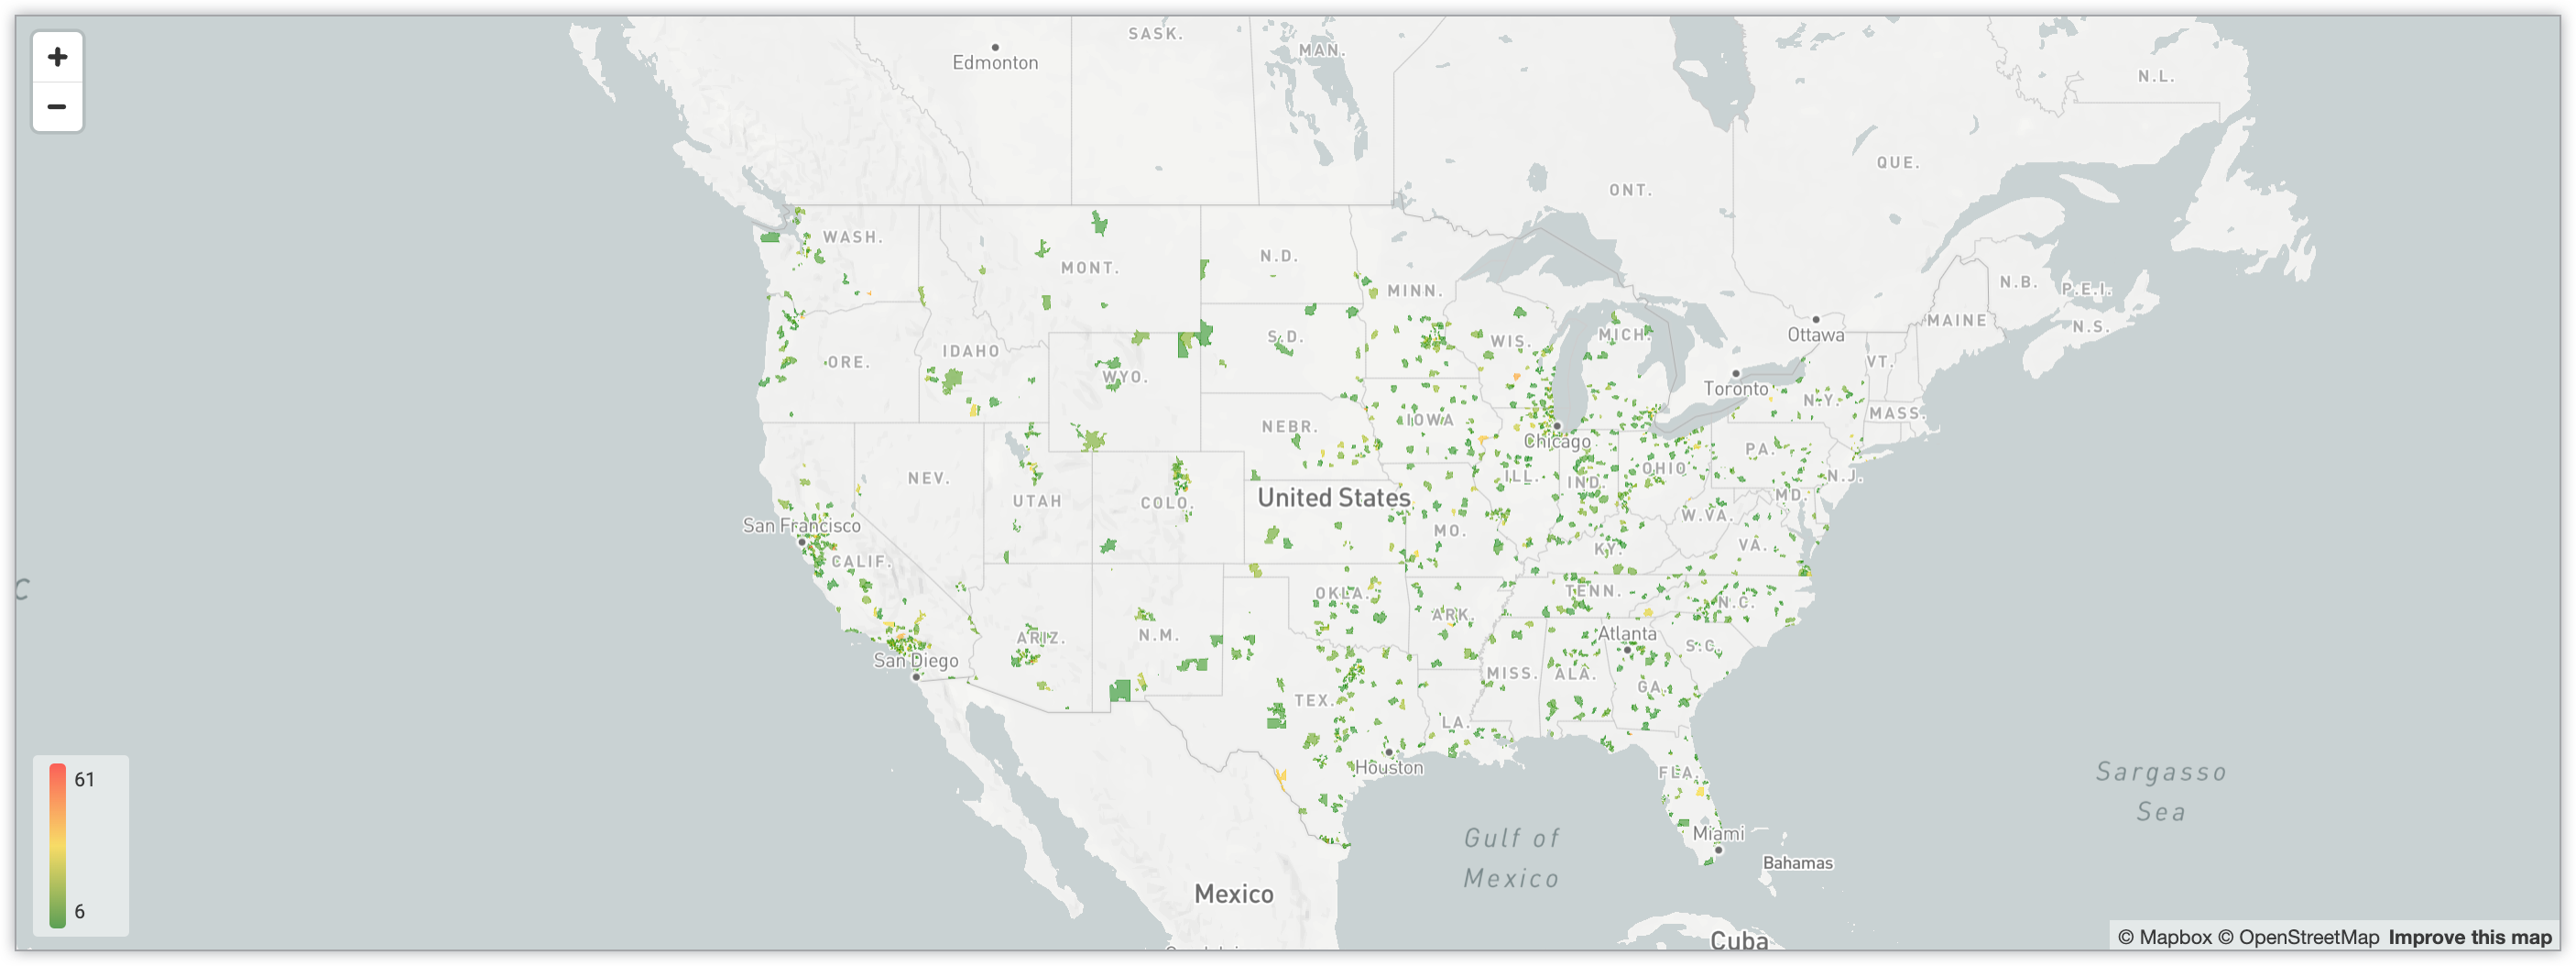 互动式地图，通过渐变颜色编码系统显示了美国境内各个邮政编码对应的用户数量。